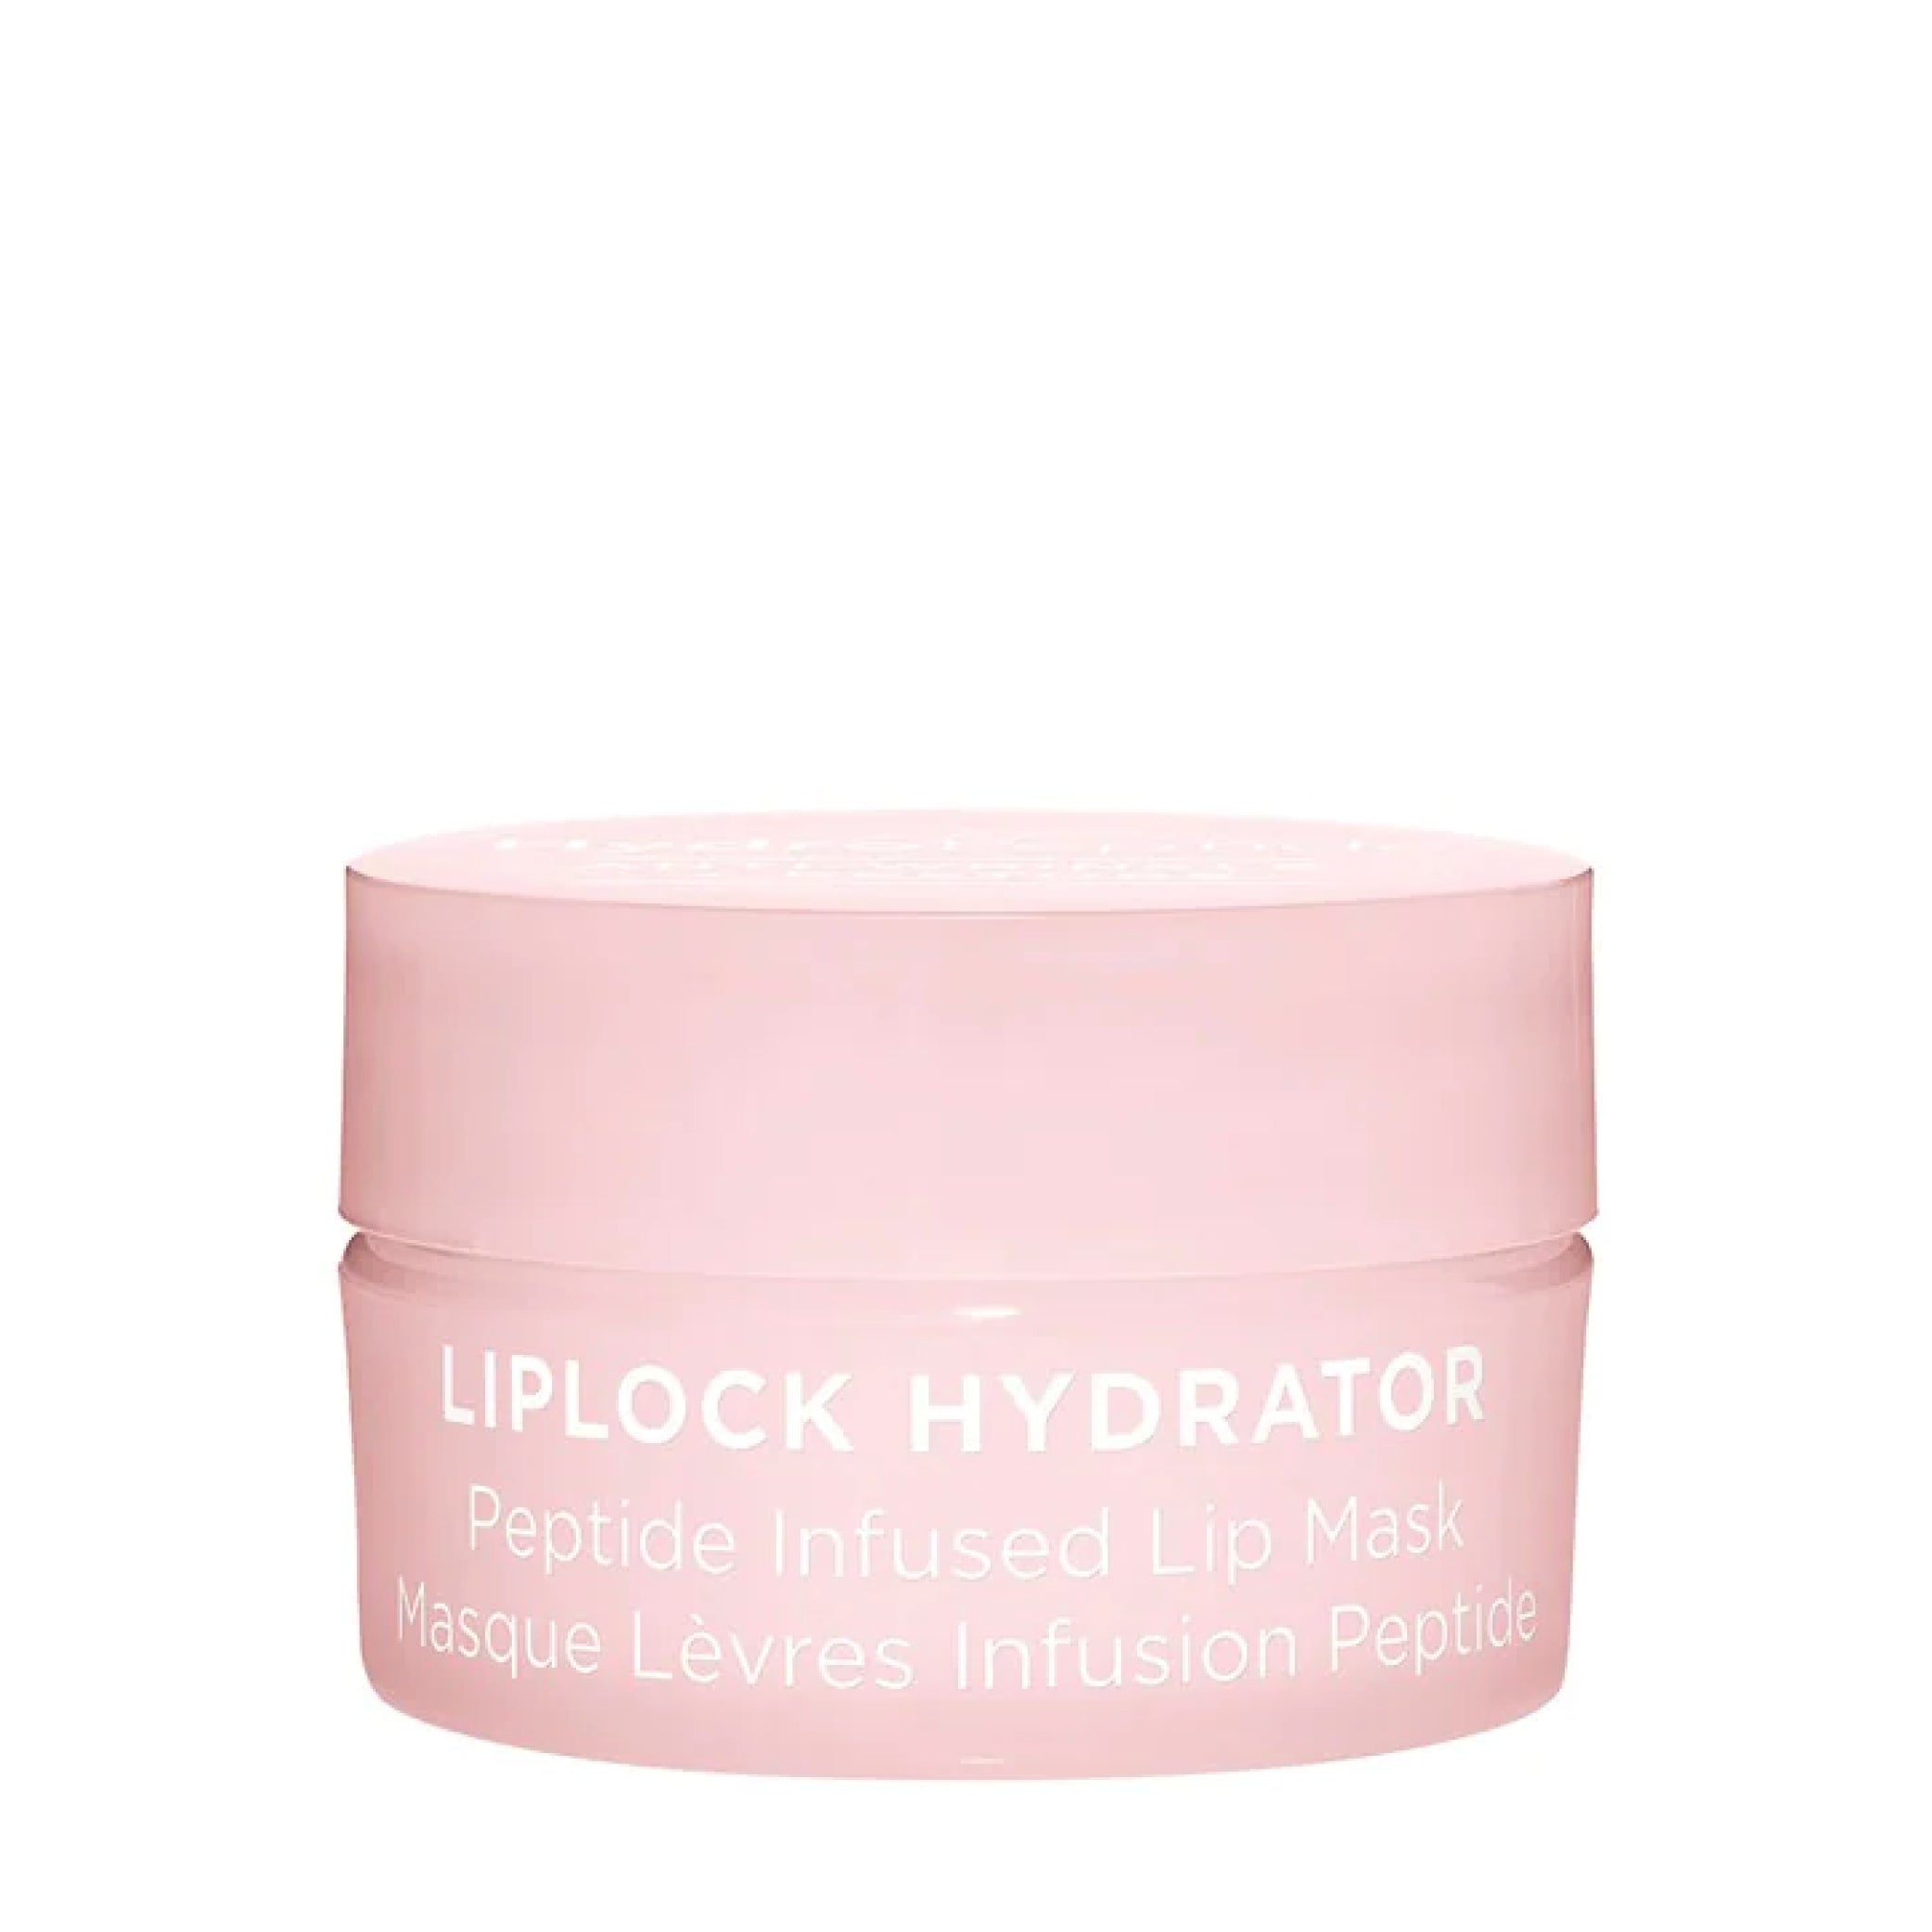 LipLock Hydrator - Masque lèvres infusion peptide